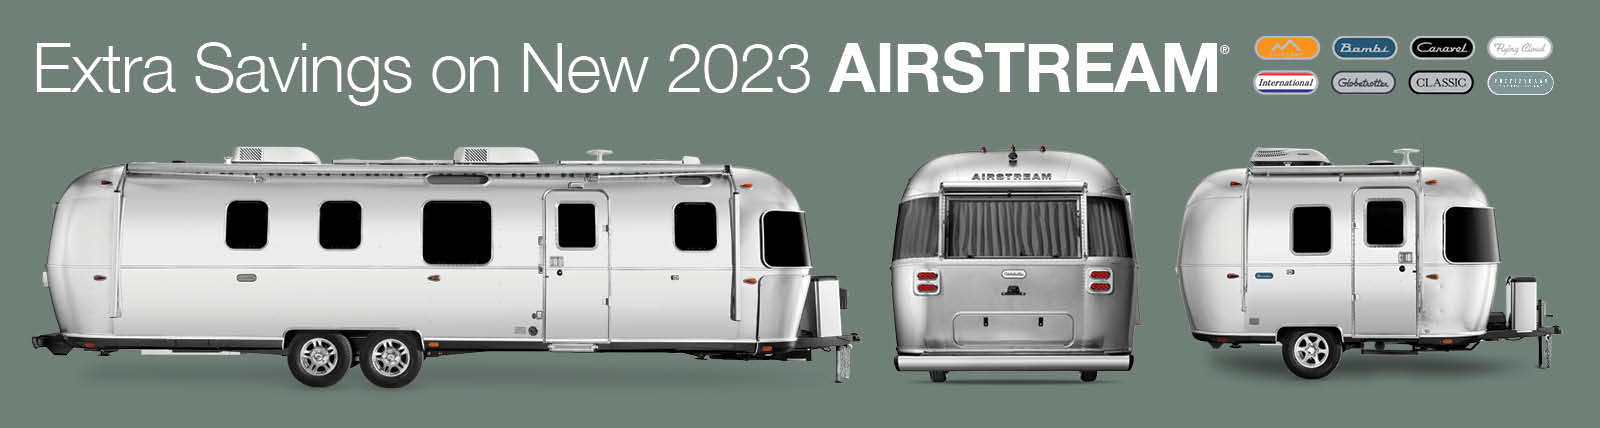 Extra Savings on New 2023 Airstream